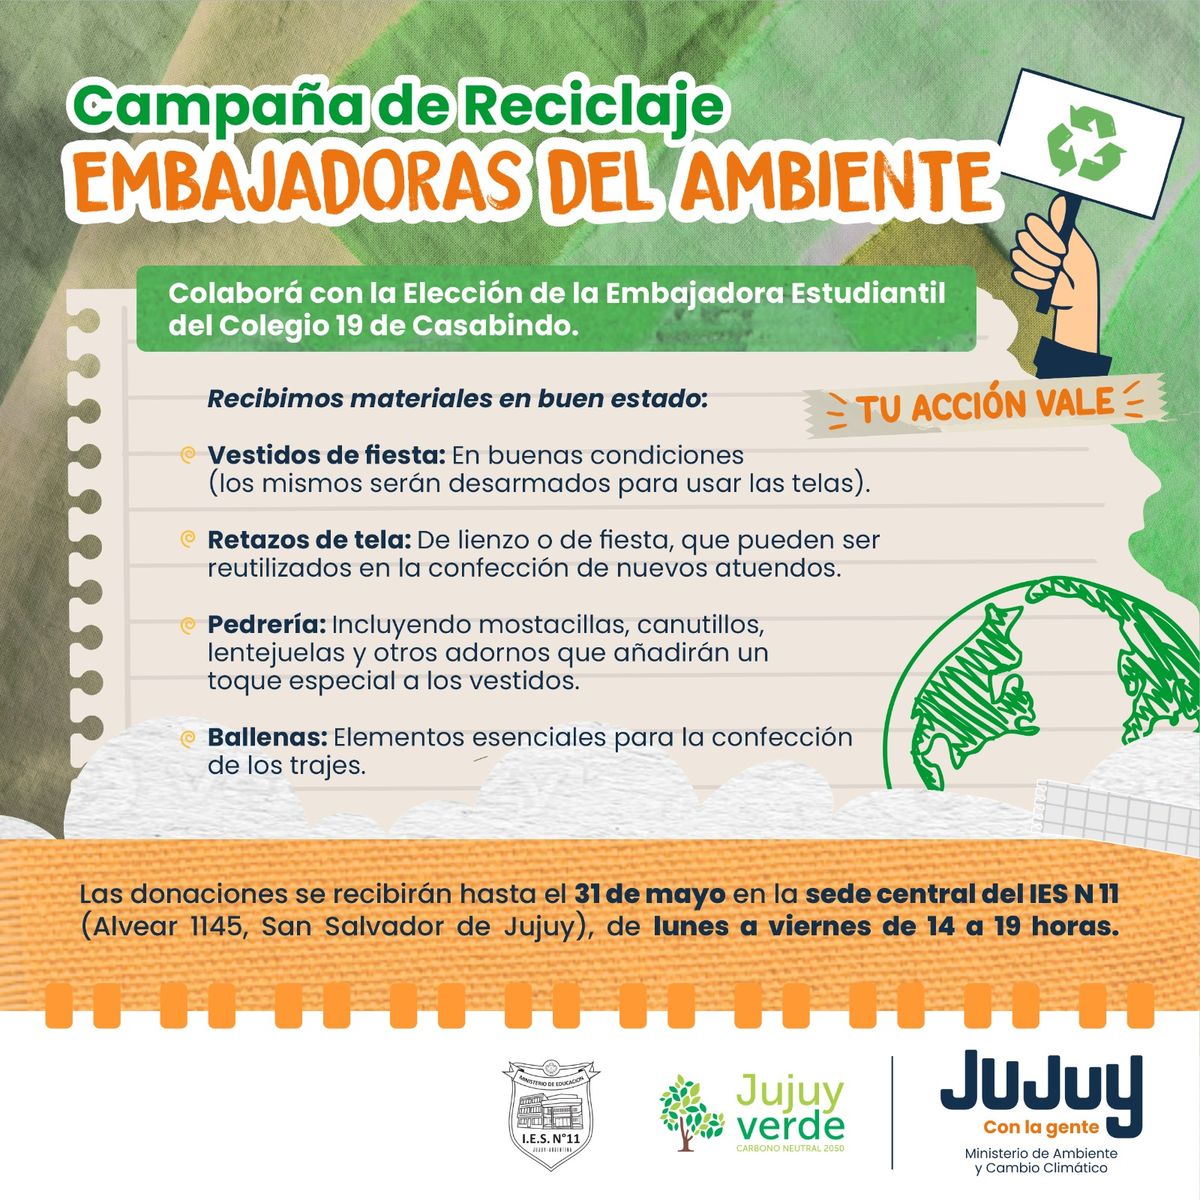 Embajadoras del Ambiente, una campaña de reciclaje para participar de la FNE